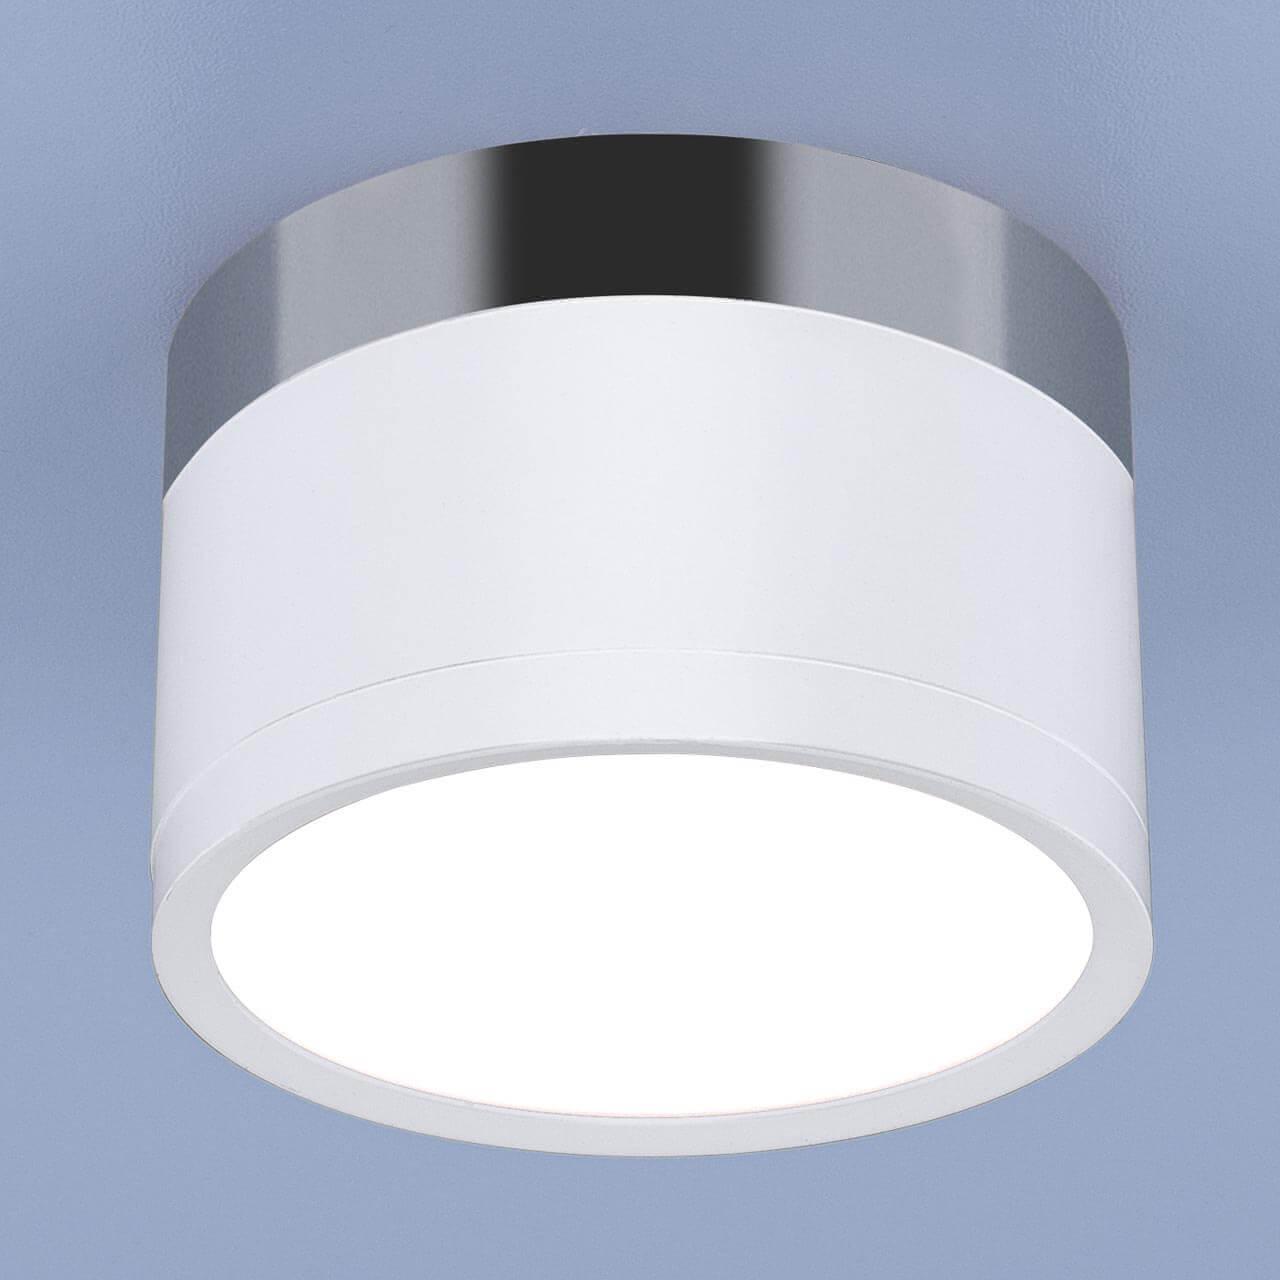 Потолочный светодиодный светильник Elektrostandard DLR029 10W 4200K белый матовый/хром 4690389122002 настенный светильник eurosvet 90020 2 хром